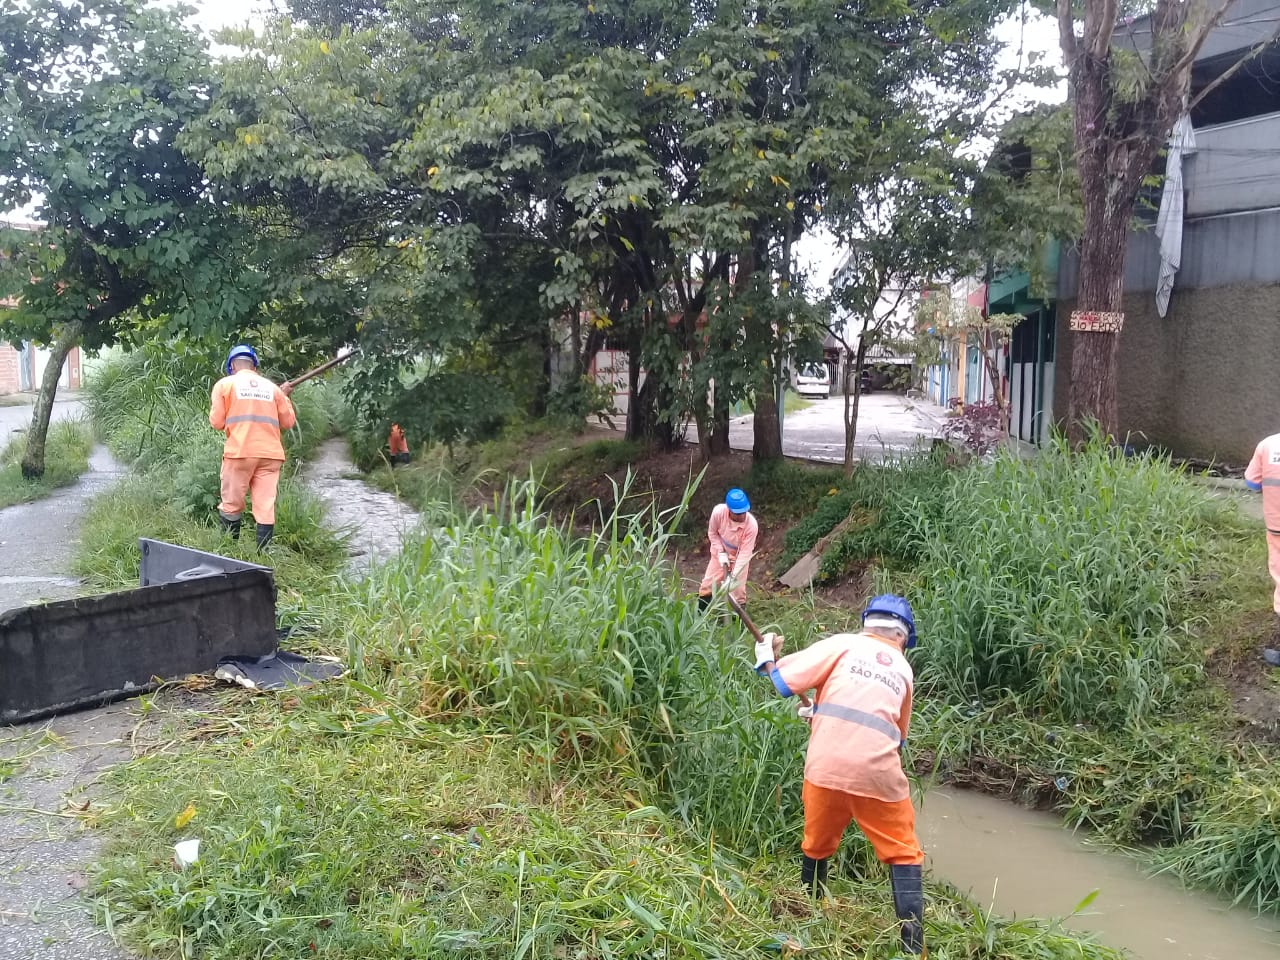 #PraCegoVer - Trabalhadores da Subprefeitura fazem limpeza no córrego, ao lado de algumas construções. Há árvores ao fundo.